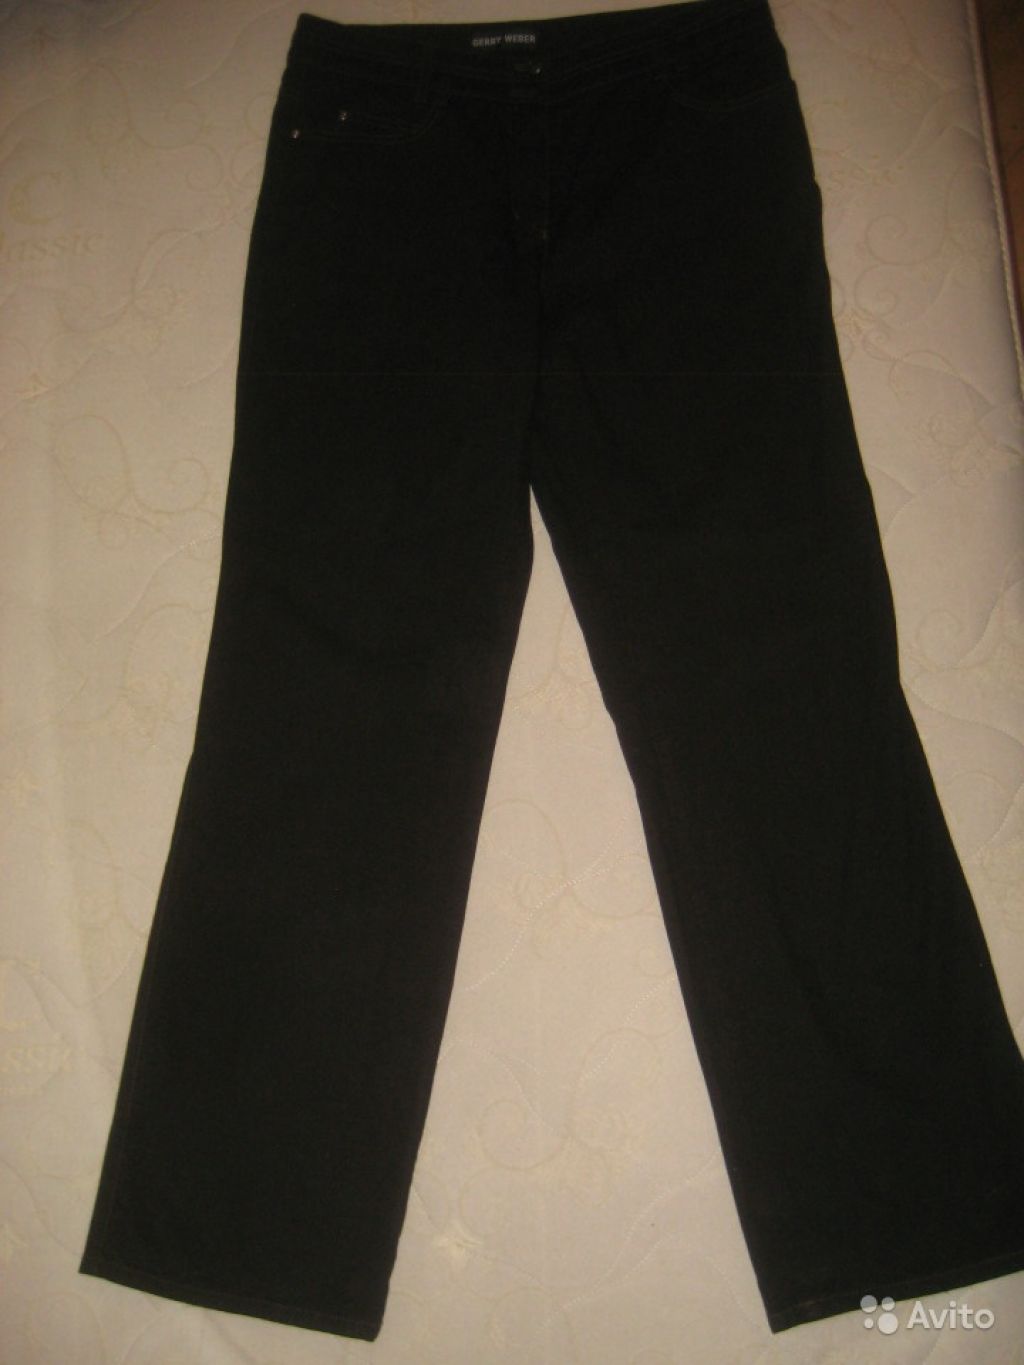 Плотные джинсы Gerry Weber Германия р.48 как новые в Москве. Фото 1